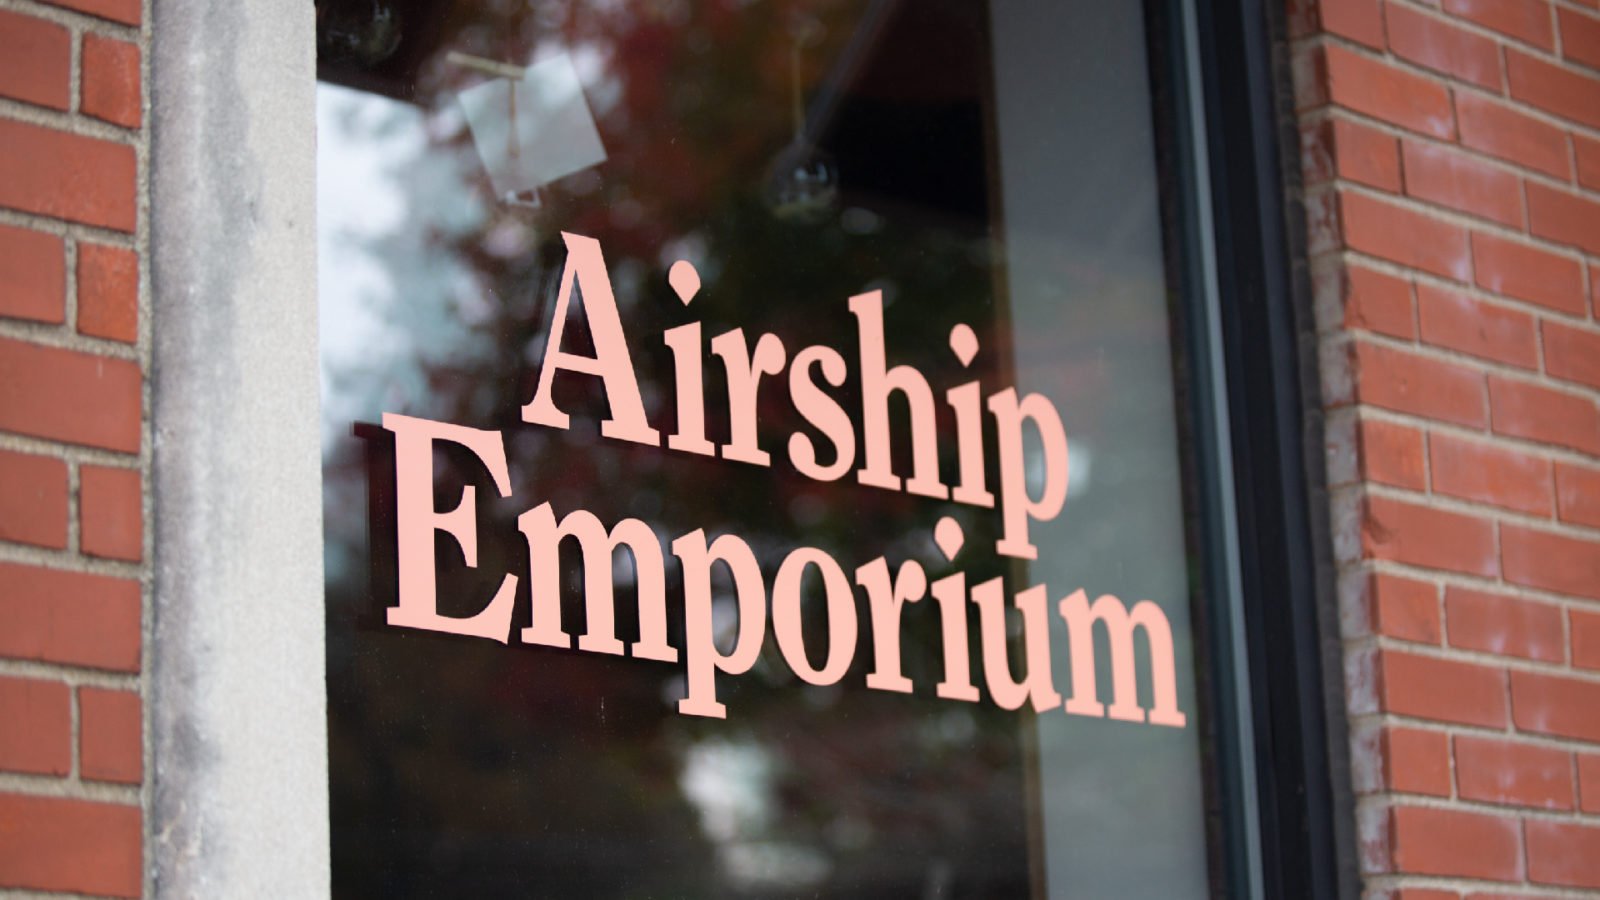 The Opposite Shop: Airship Emporium Door Signage